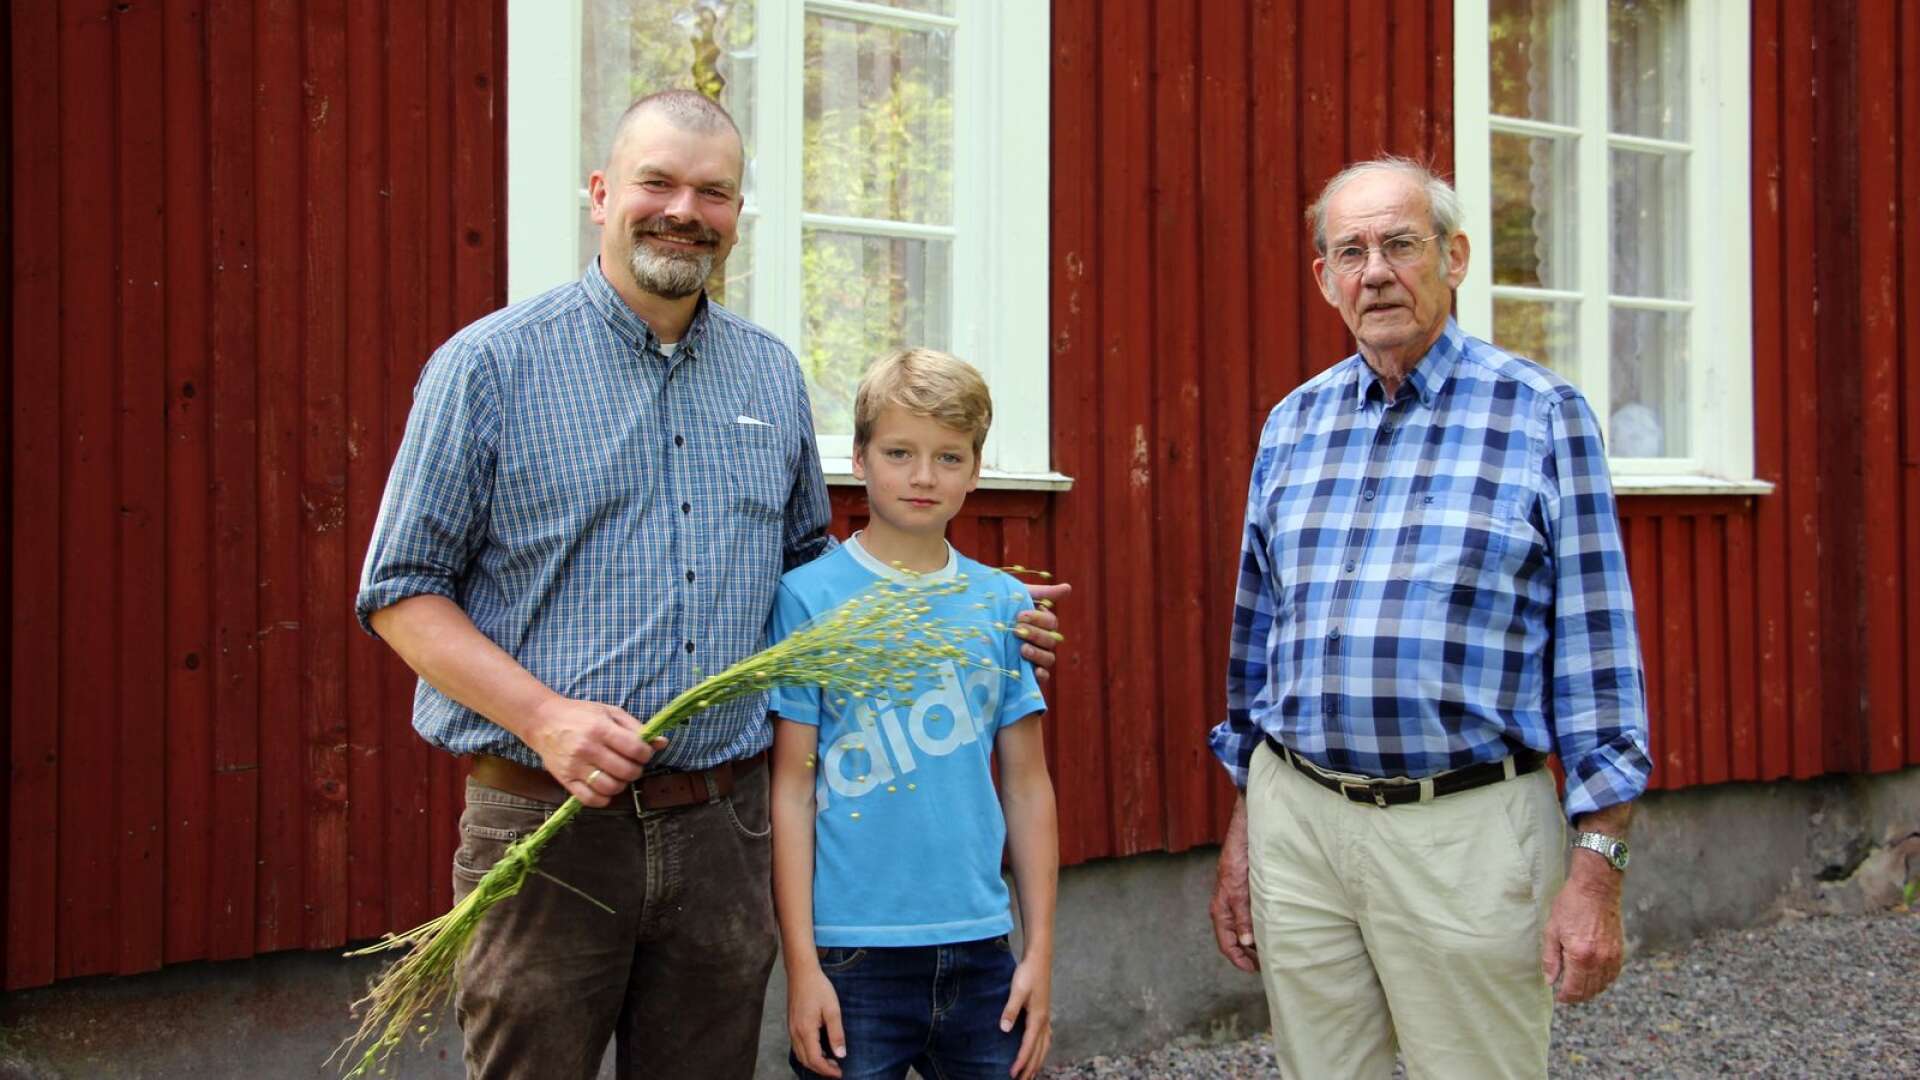 Jan Graf, Hannes Graf och Jan Helling. Jan Graf och Jan Helling berättade om Jättenhem och sedan spelade Hannes med sin pappa Jan Graf.